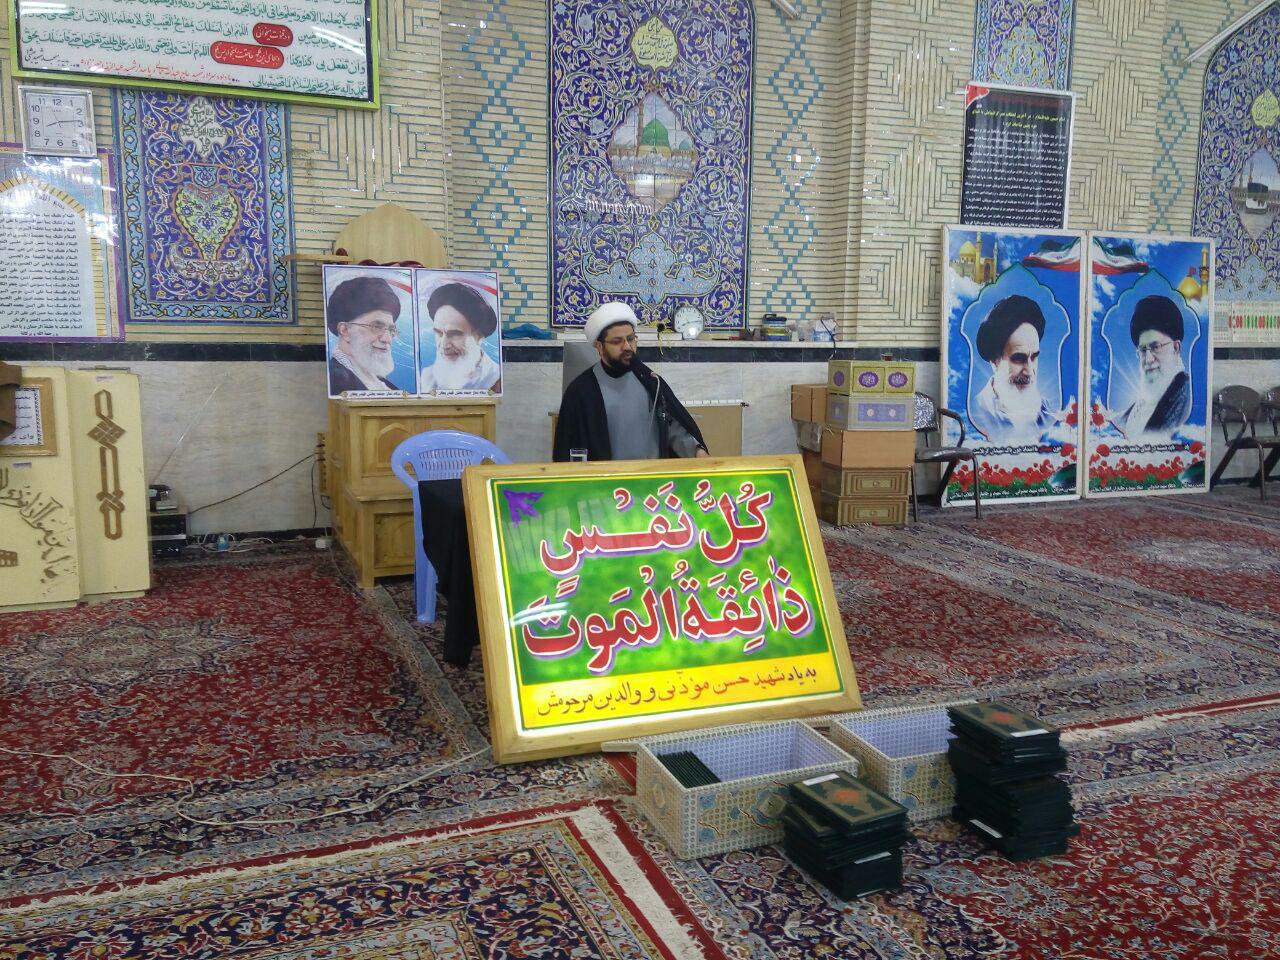 مراسم شهدای گمنام در مسجد شهید بهشتی با حضور و سخنرانی امام جمعه محترم شهر قهدریجان و مسئولین شهرست